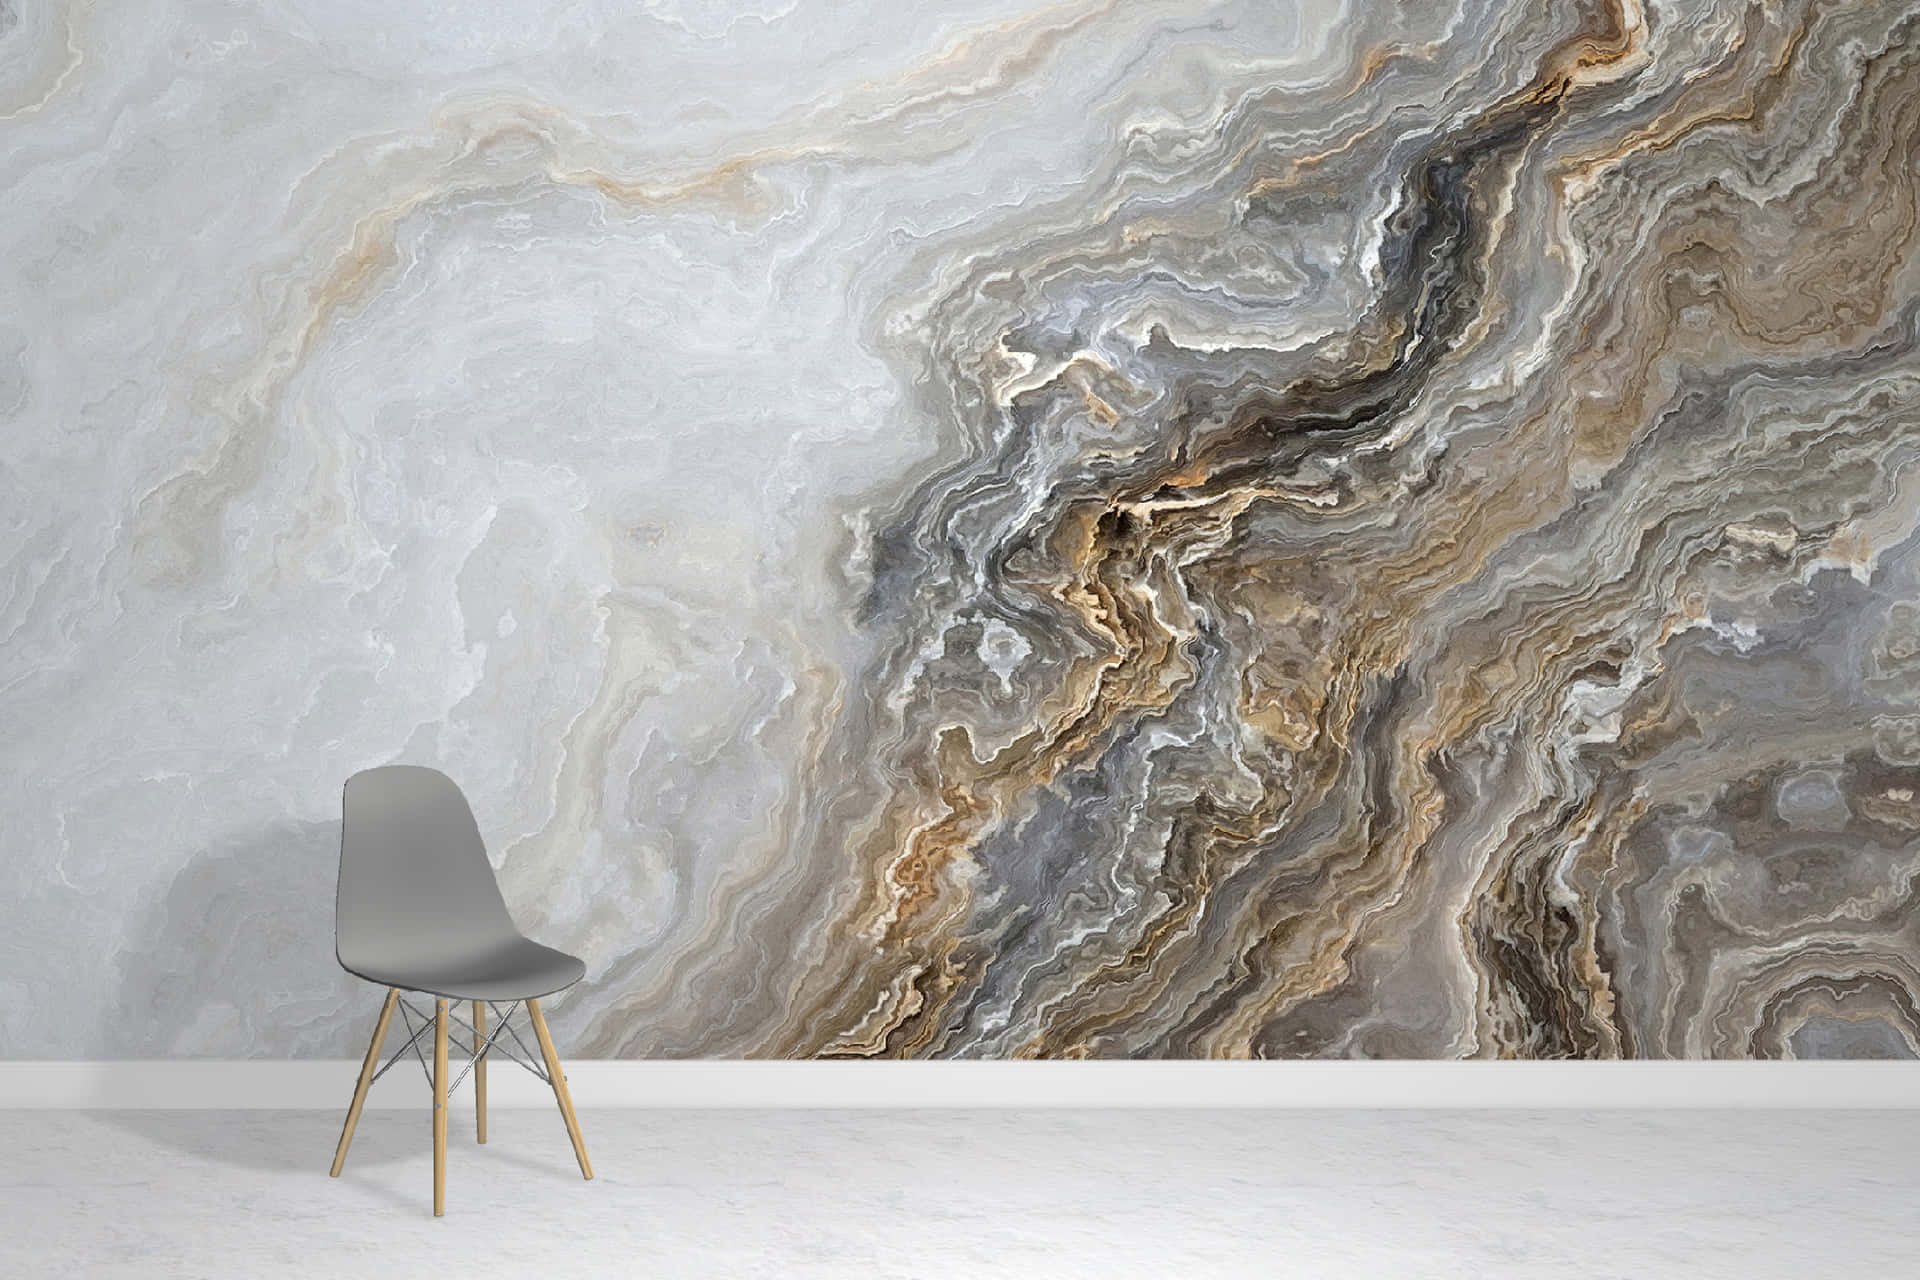 Einemarmor-wandmalerei In Einem Raum Mit Einem Stuhl. Wallpaper